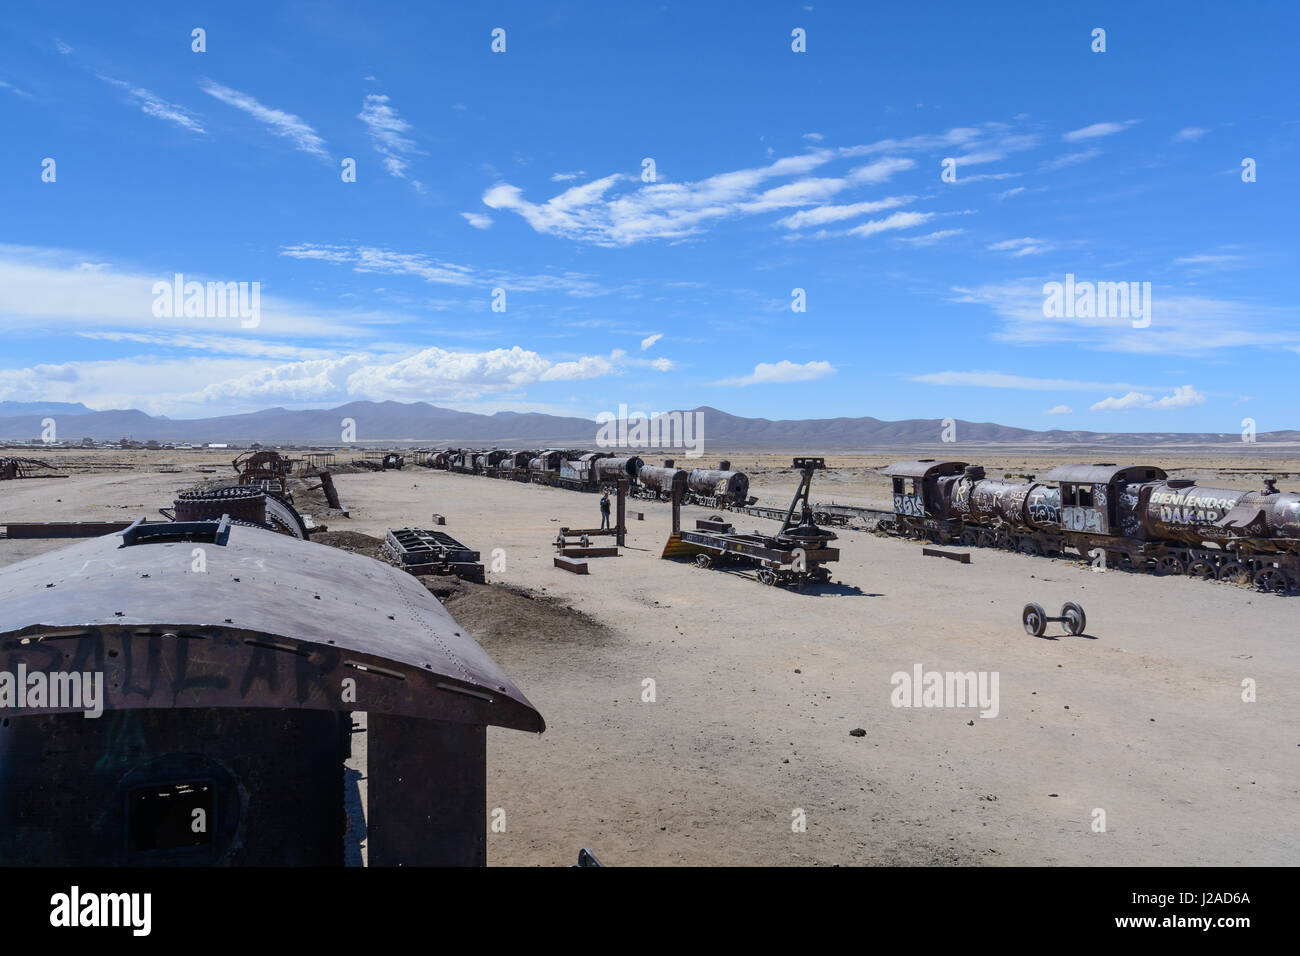 Bolivia, Departamento de Potosí, Uyuni, In Uyuni (3600 m asl) there is the legendary train cemetery Stock Photo